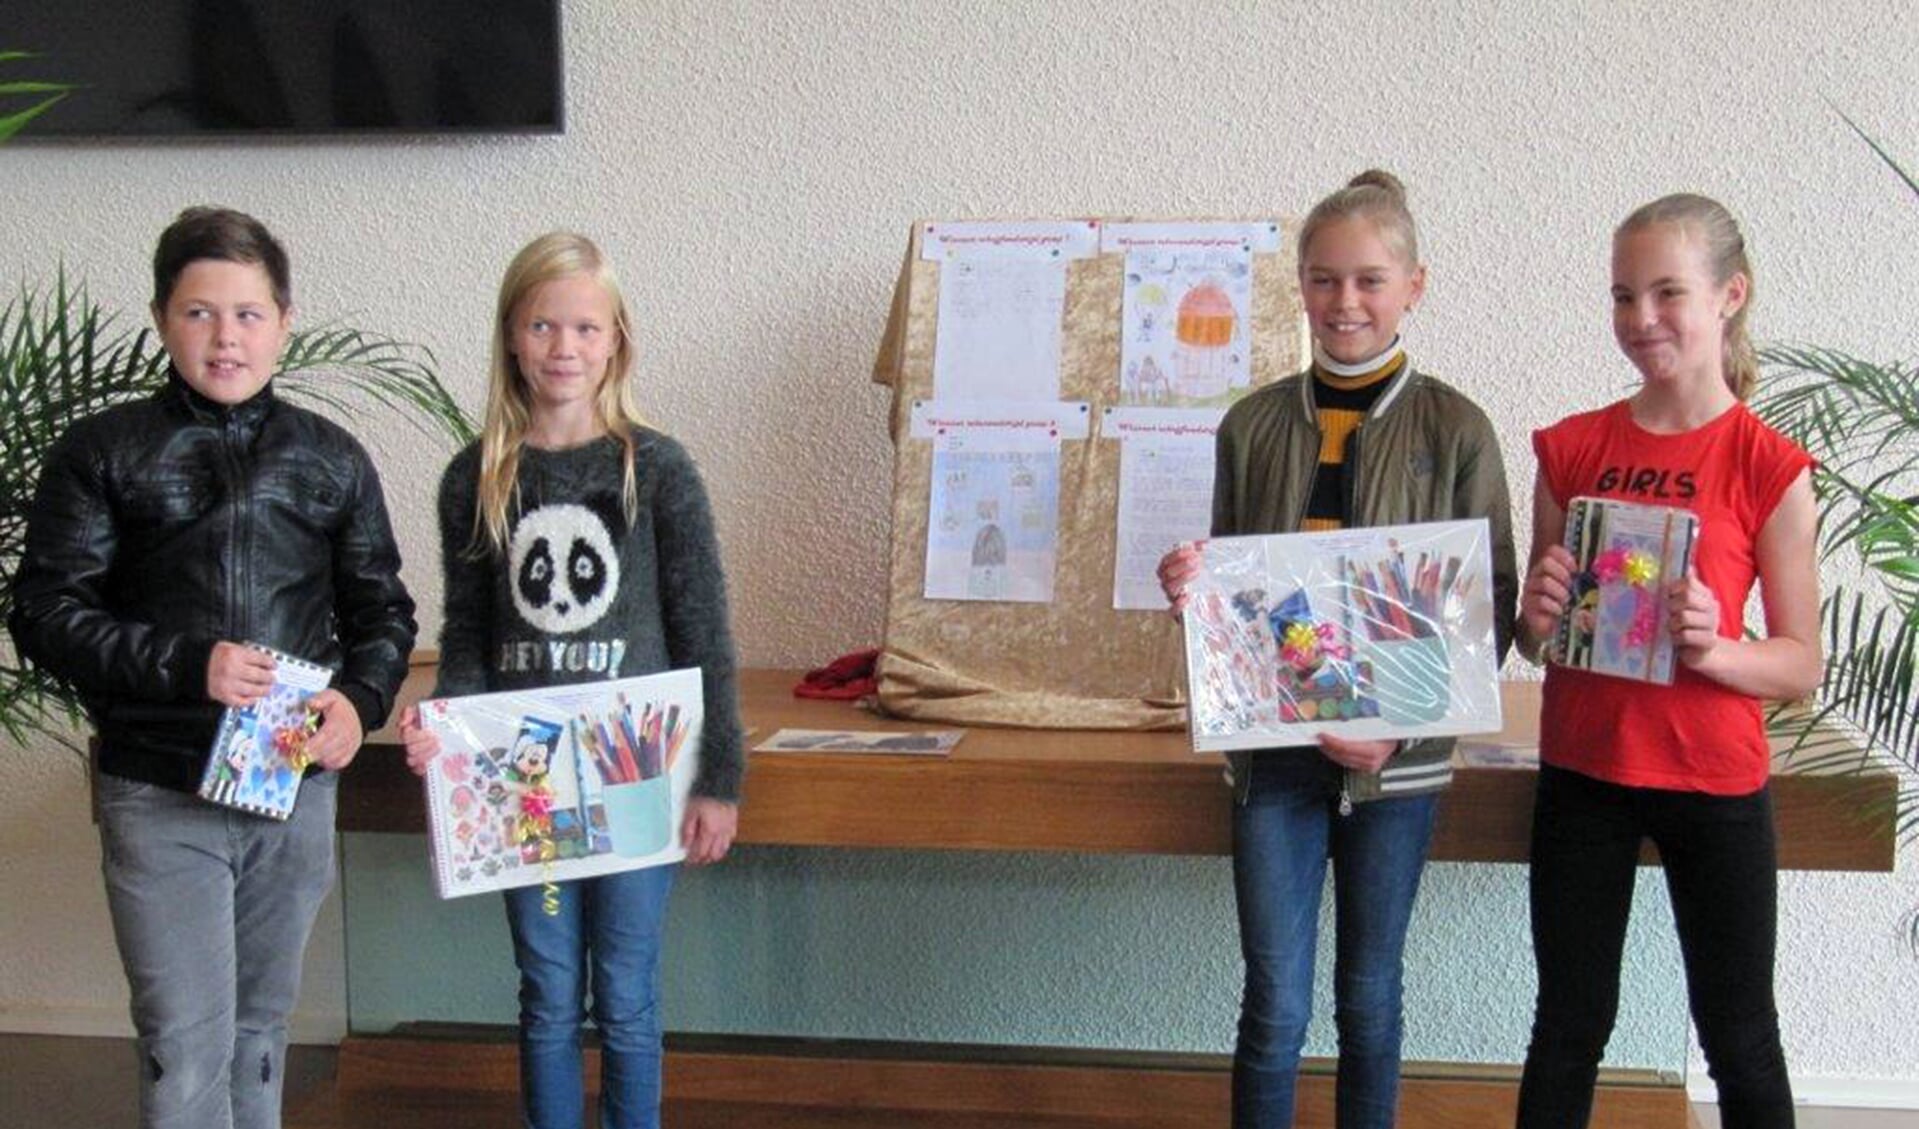 De winnaars van de vredesweek-wedstrijd voor de jeugd 2019 in Hoogkarspel.